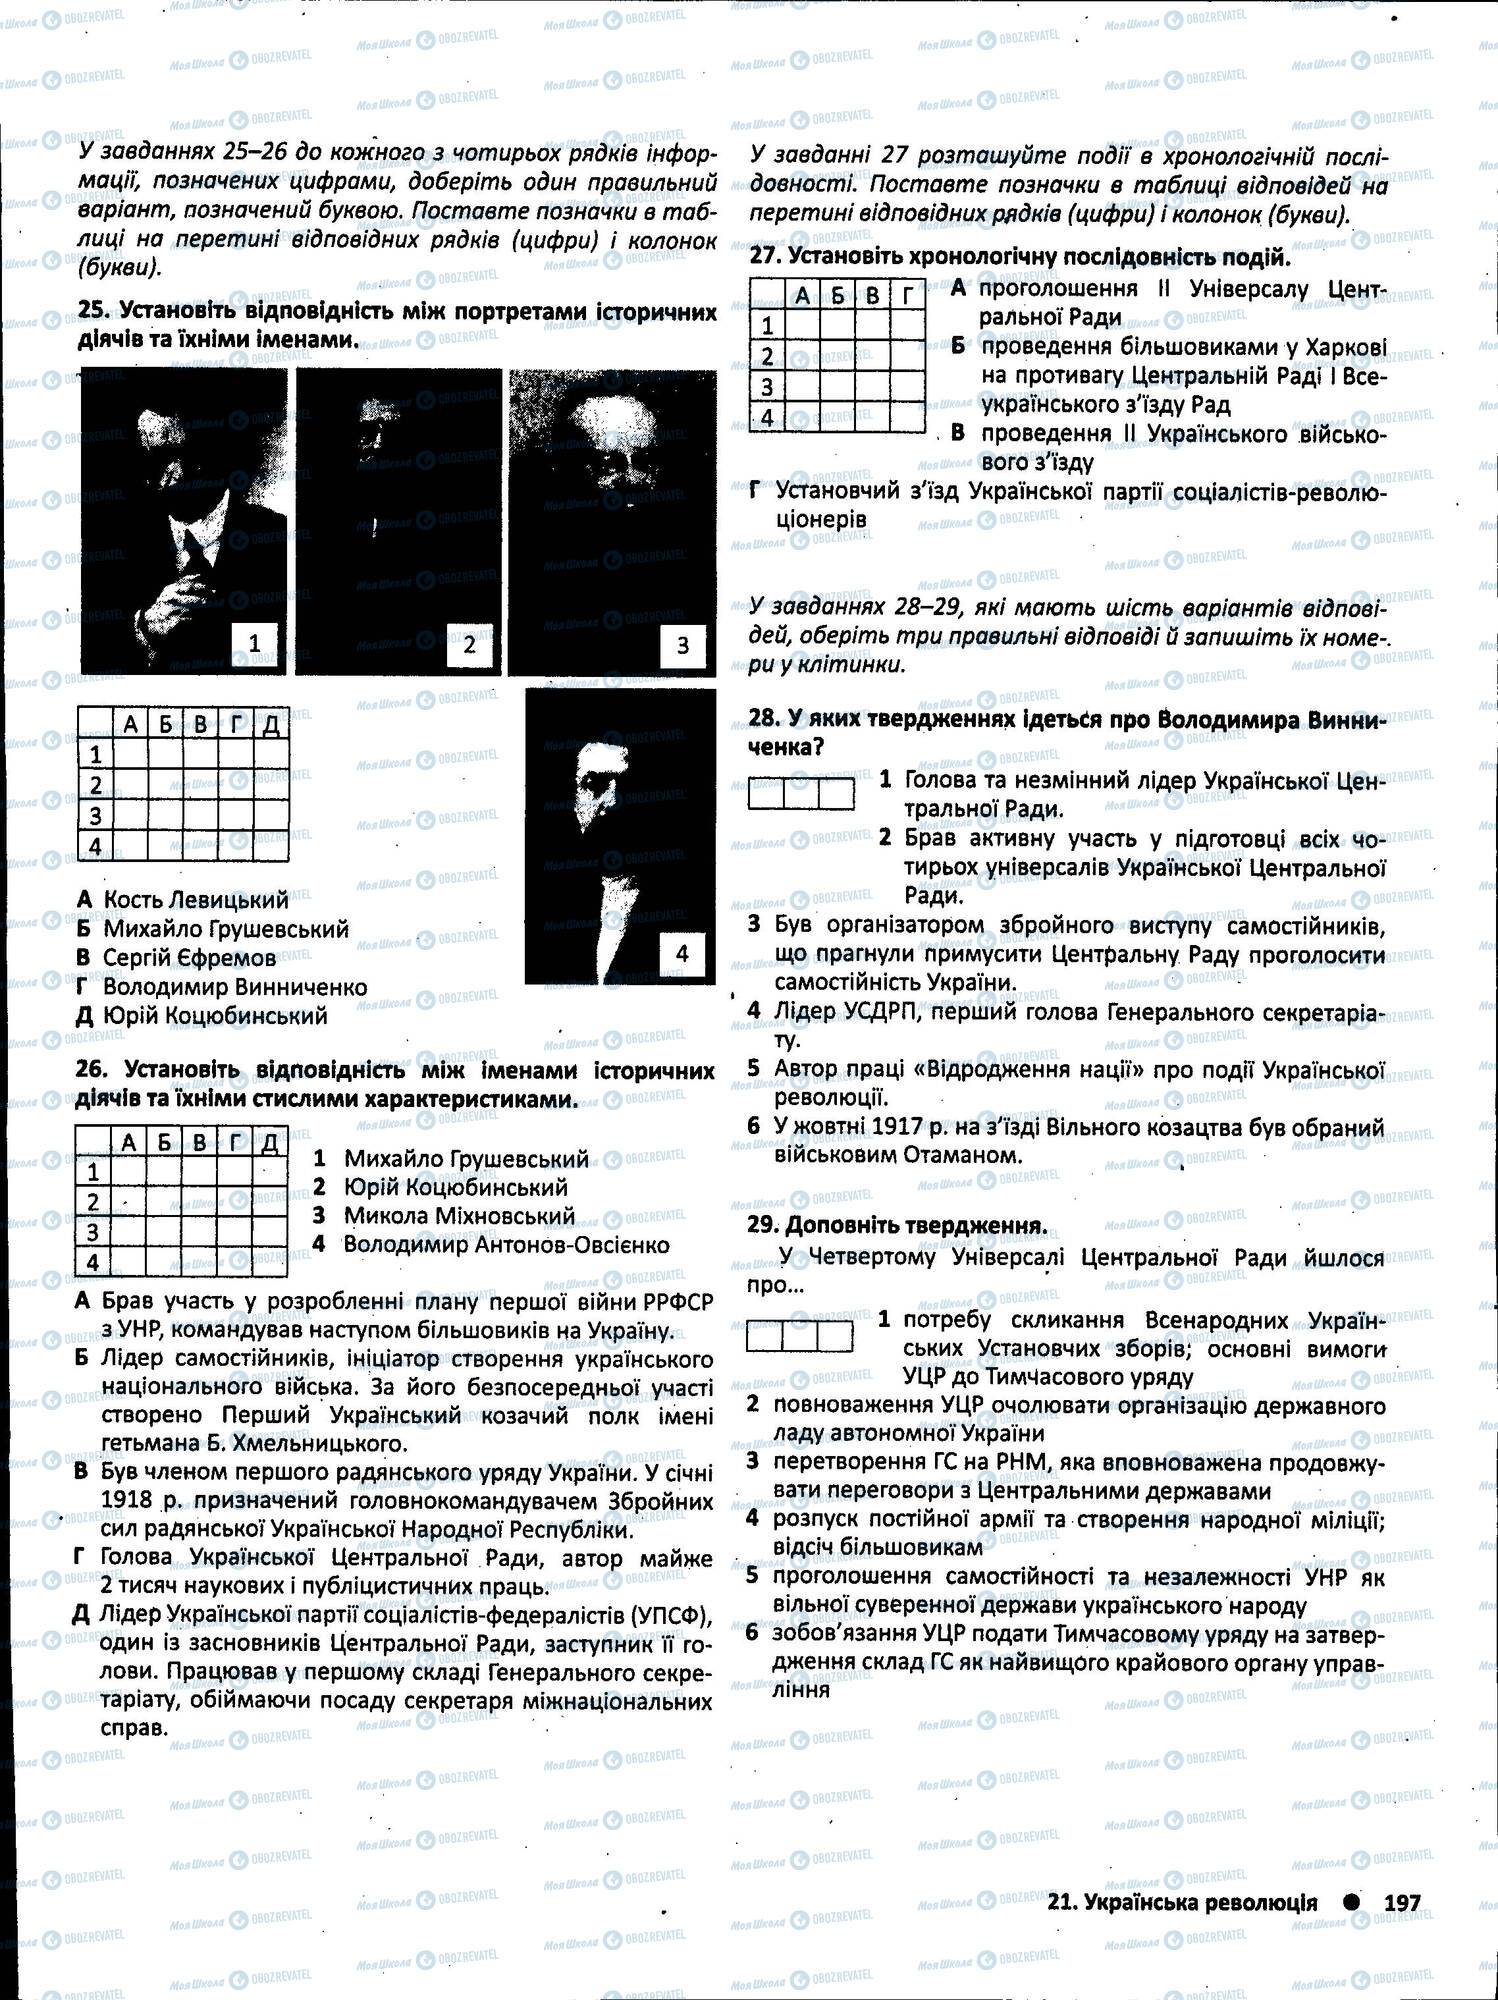 ЗНО История Украины 11 класс страница 197